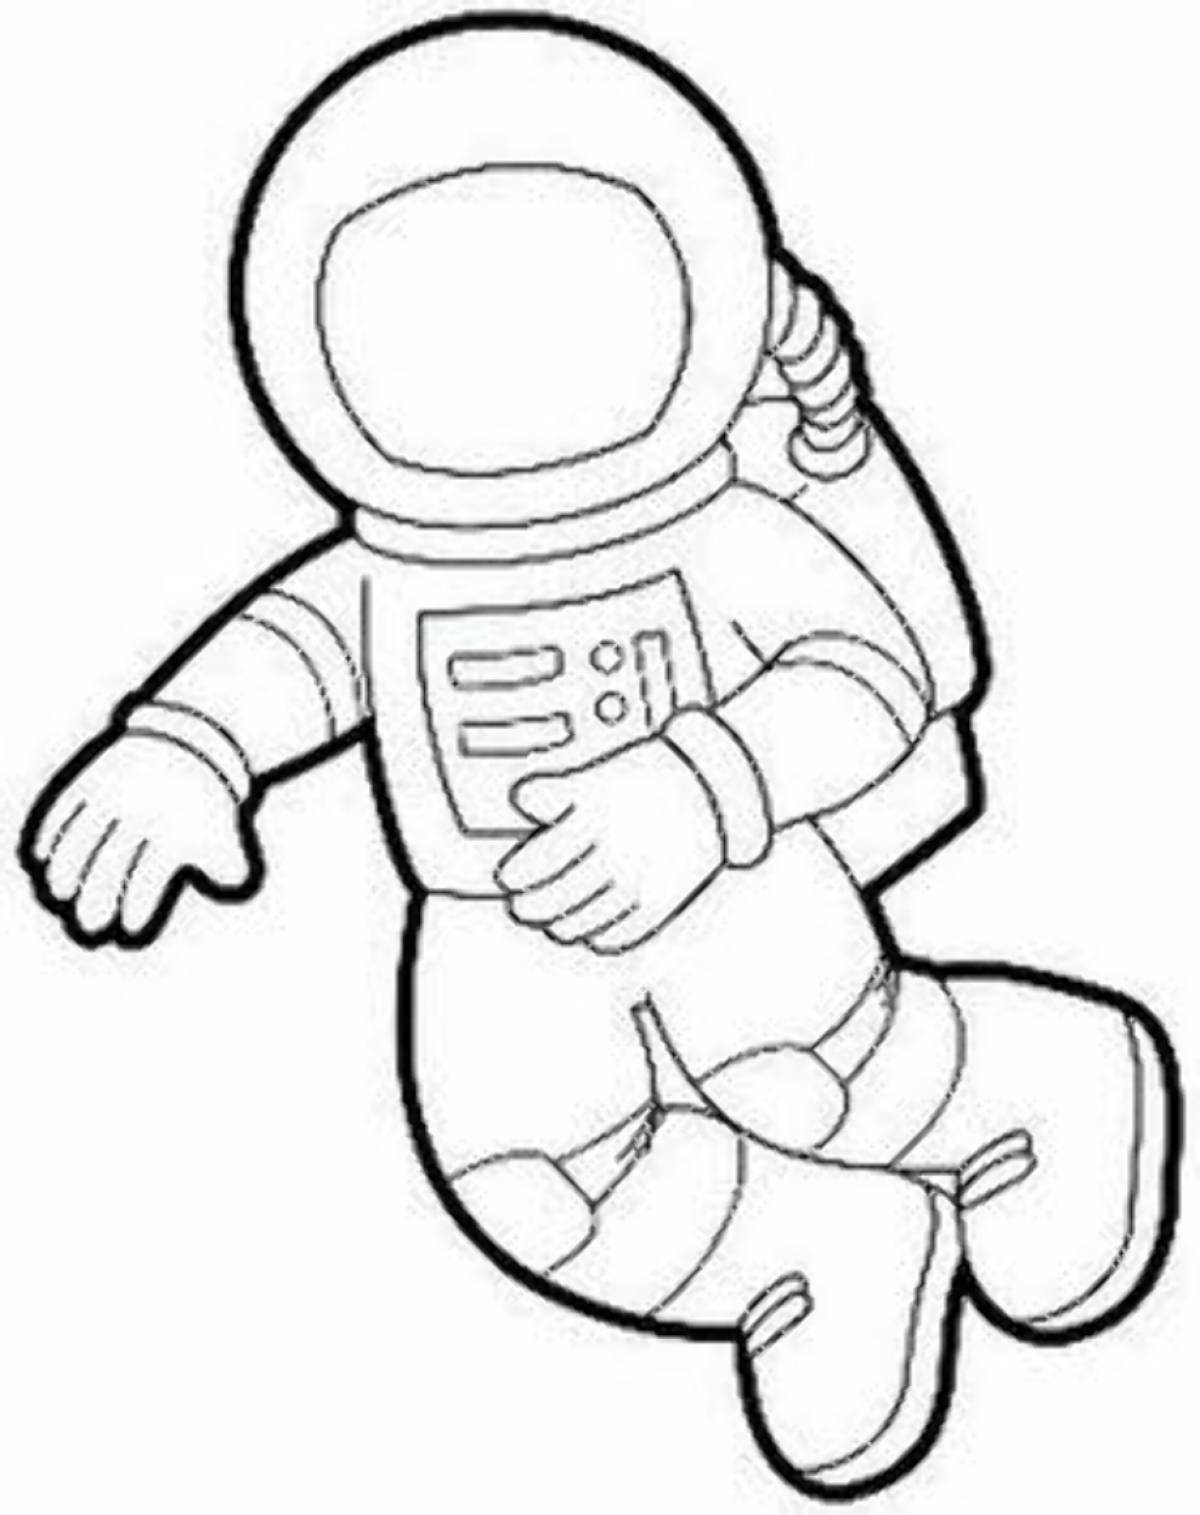 Amazing spacesuit astronaut